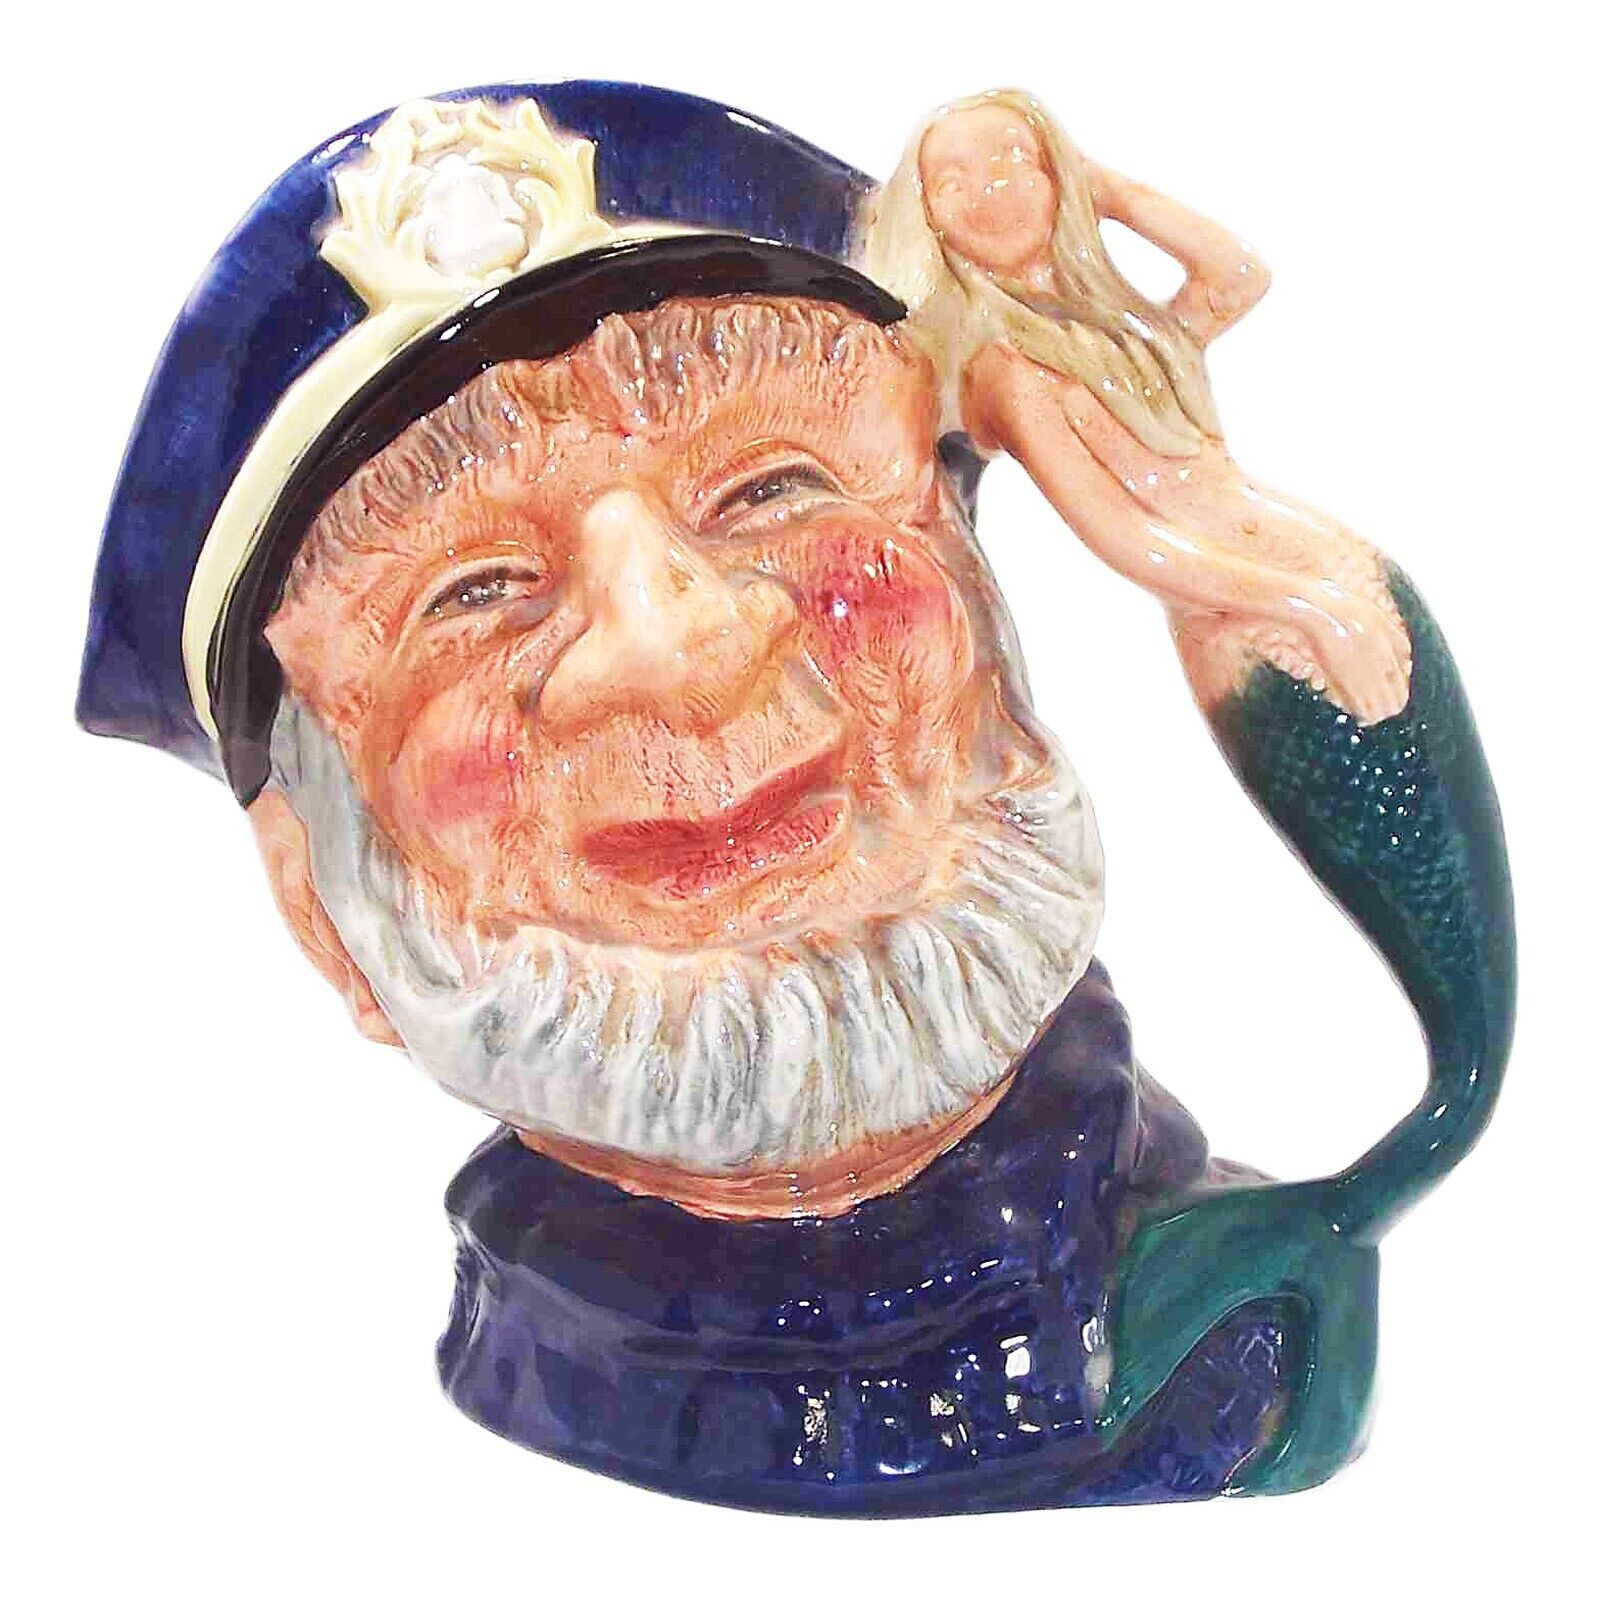 Royal Doulton Character Mug/Jug – Old Salt with Mermaid Handle – D6551 - 1960